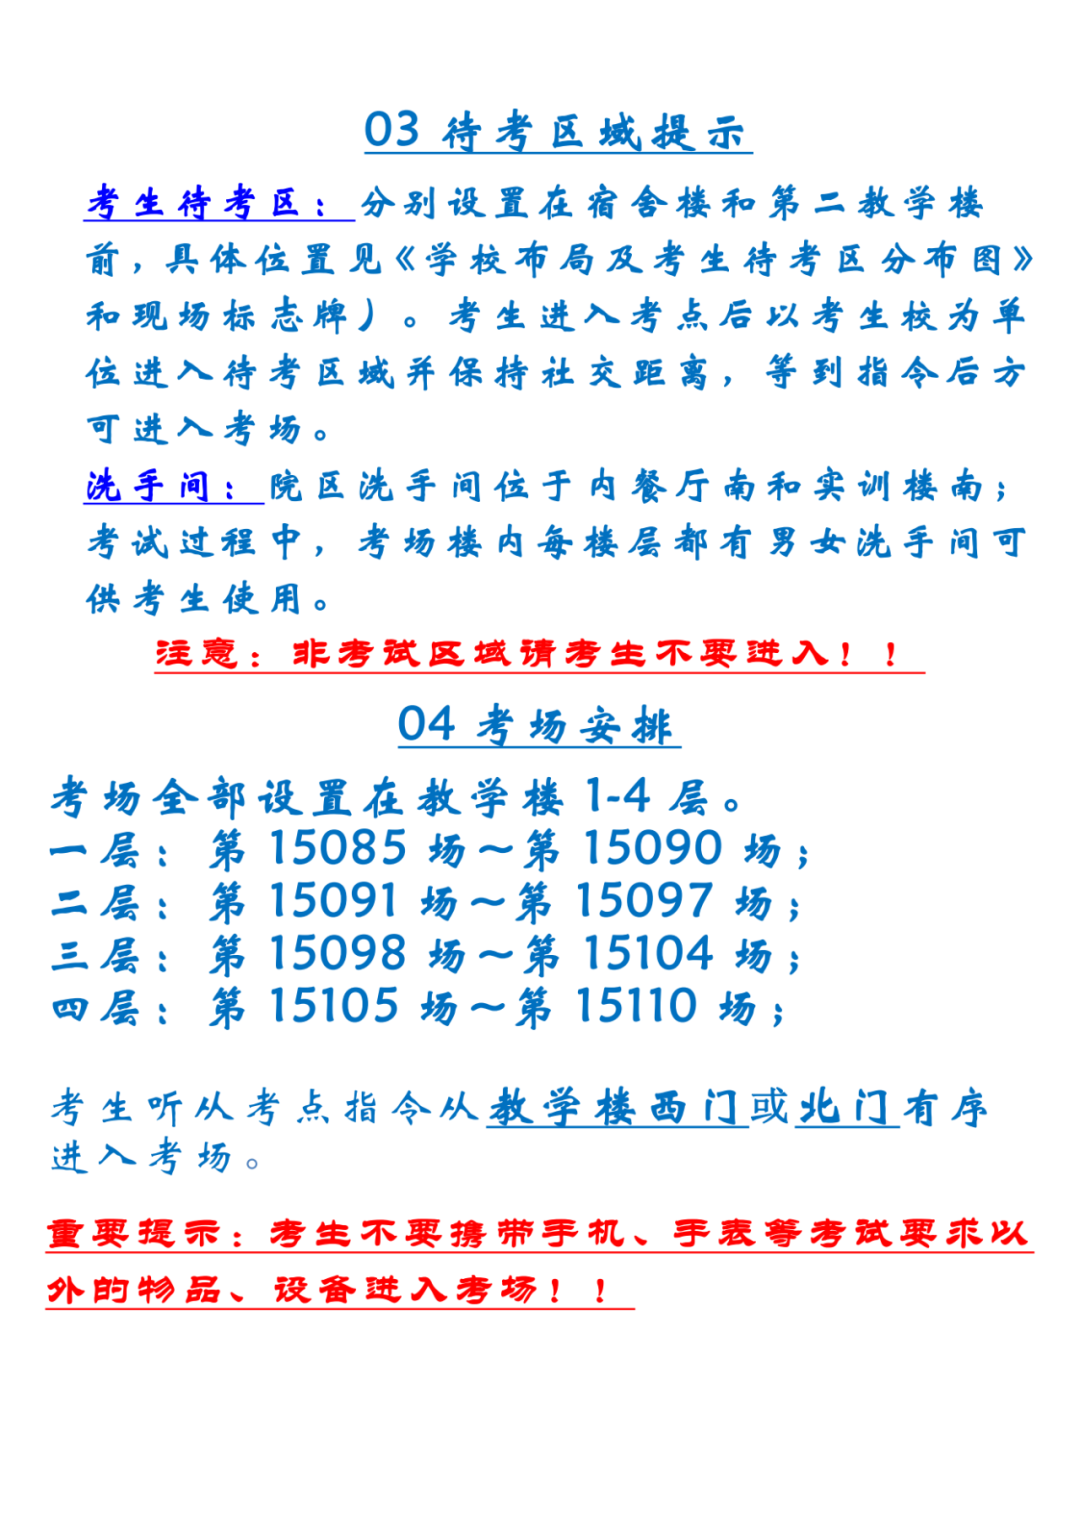 2022年天津武清区中考考点考场示意图(图45)